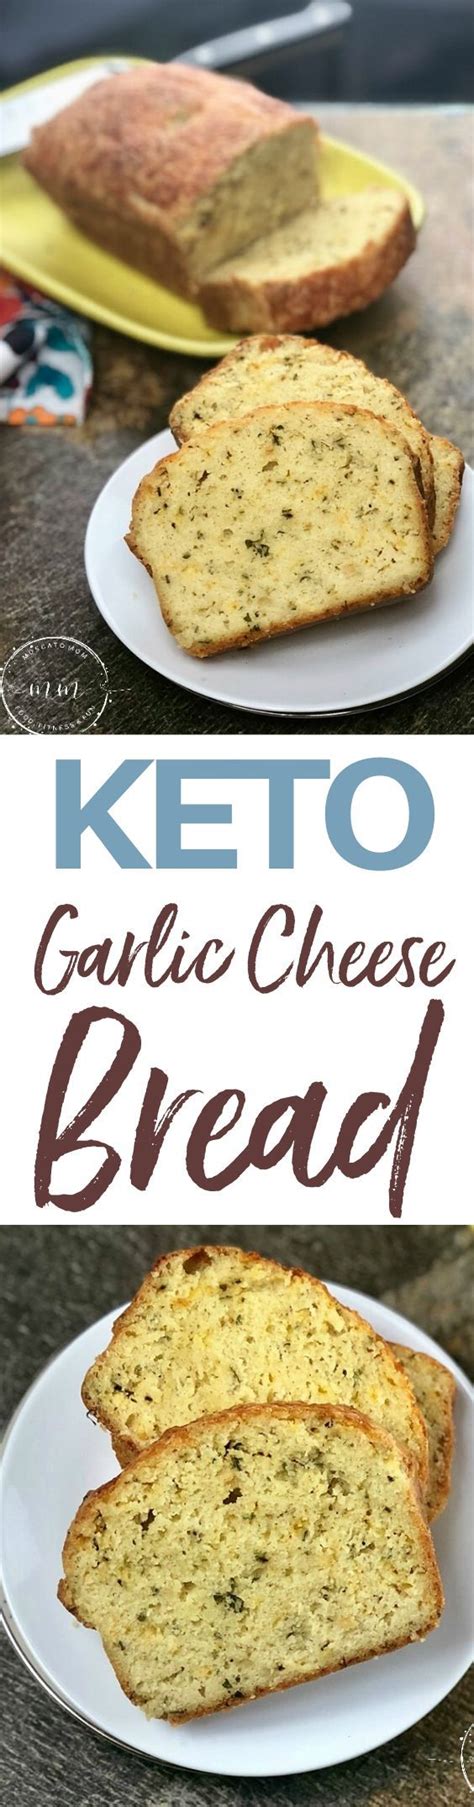 simple keto garlic cheese bread recipe low carb